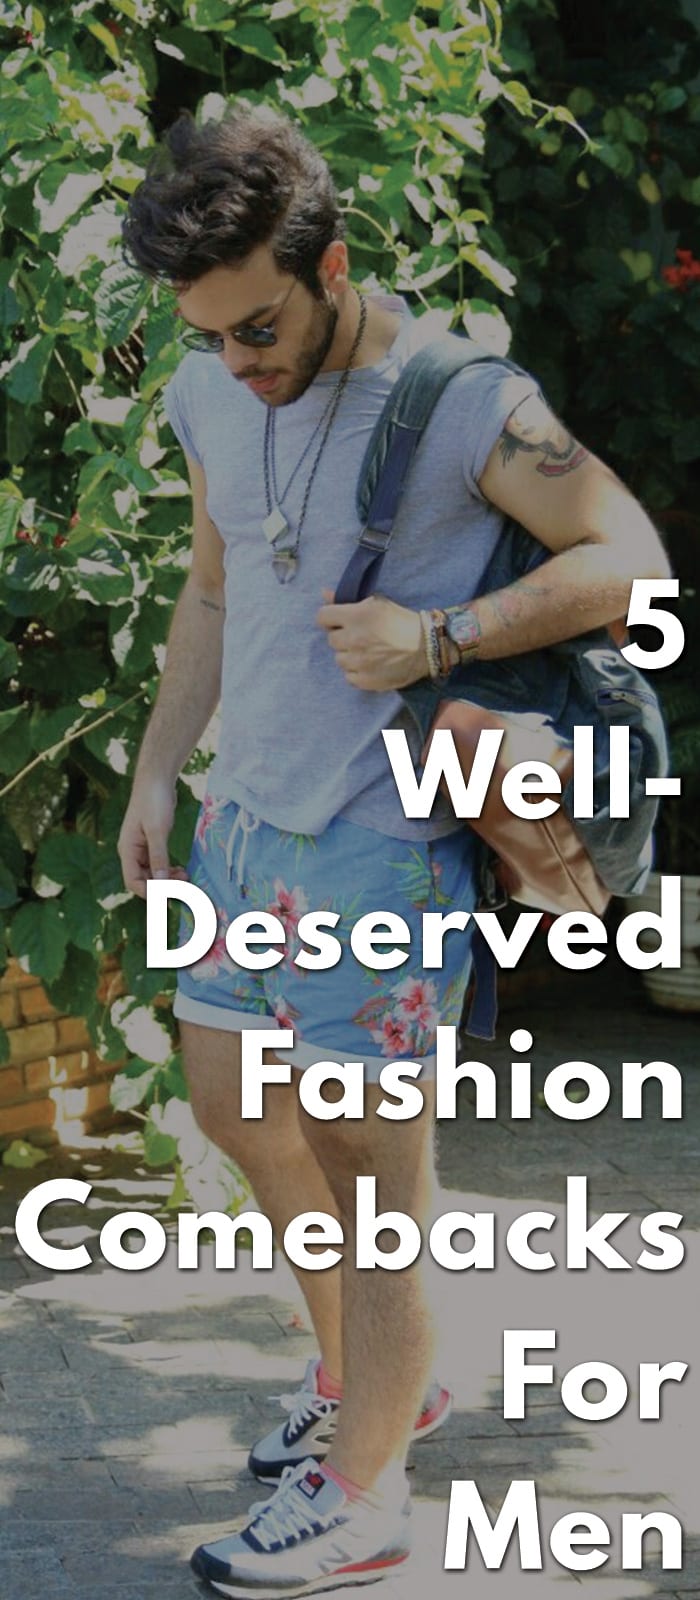 5-Well-Deserved-Fashion-Comebacks-For-Men